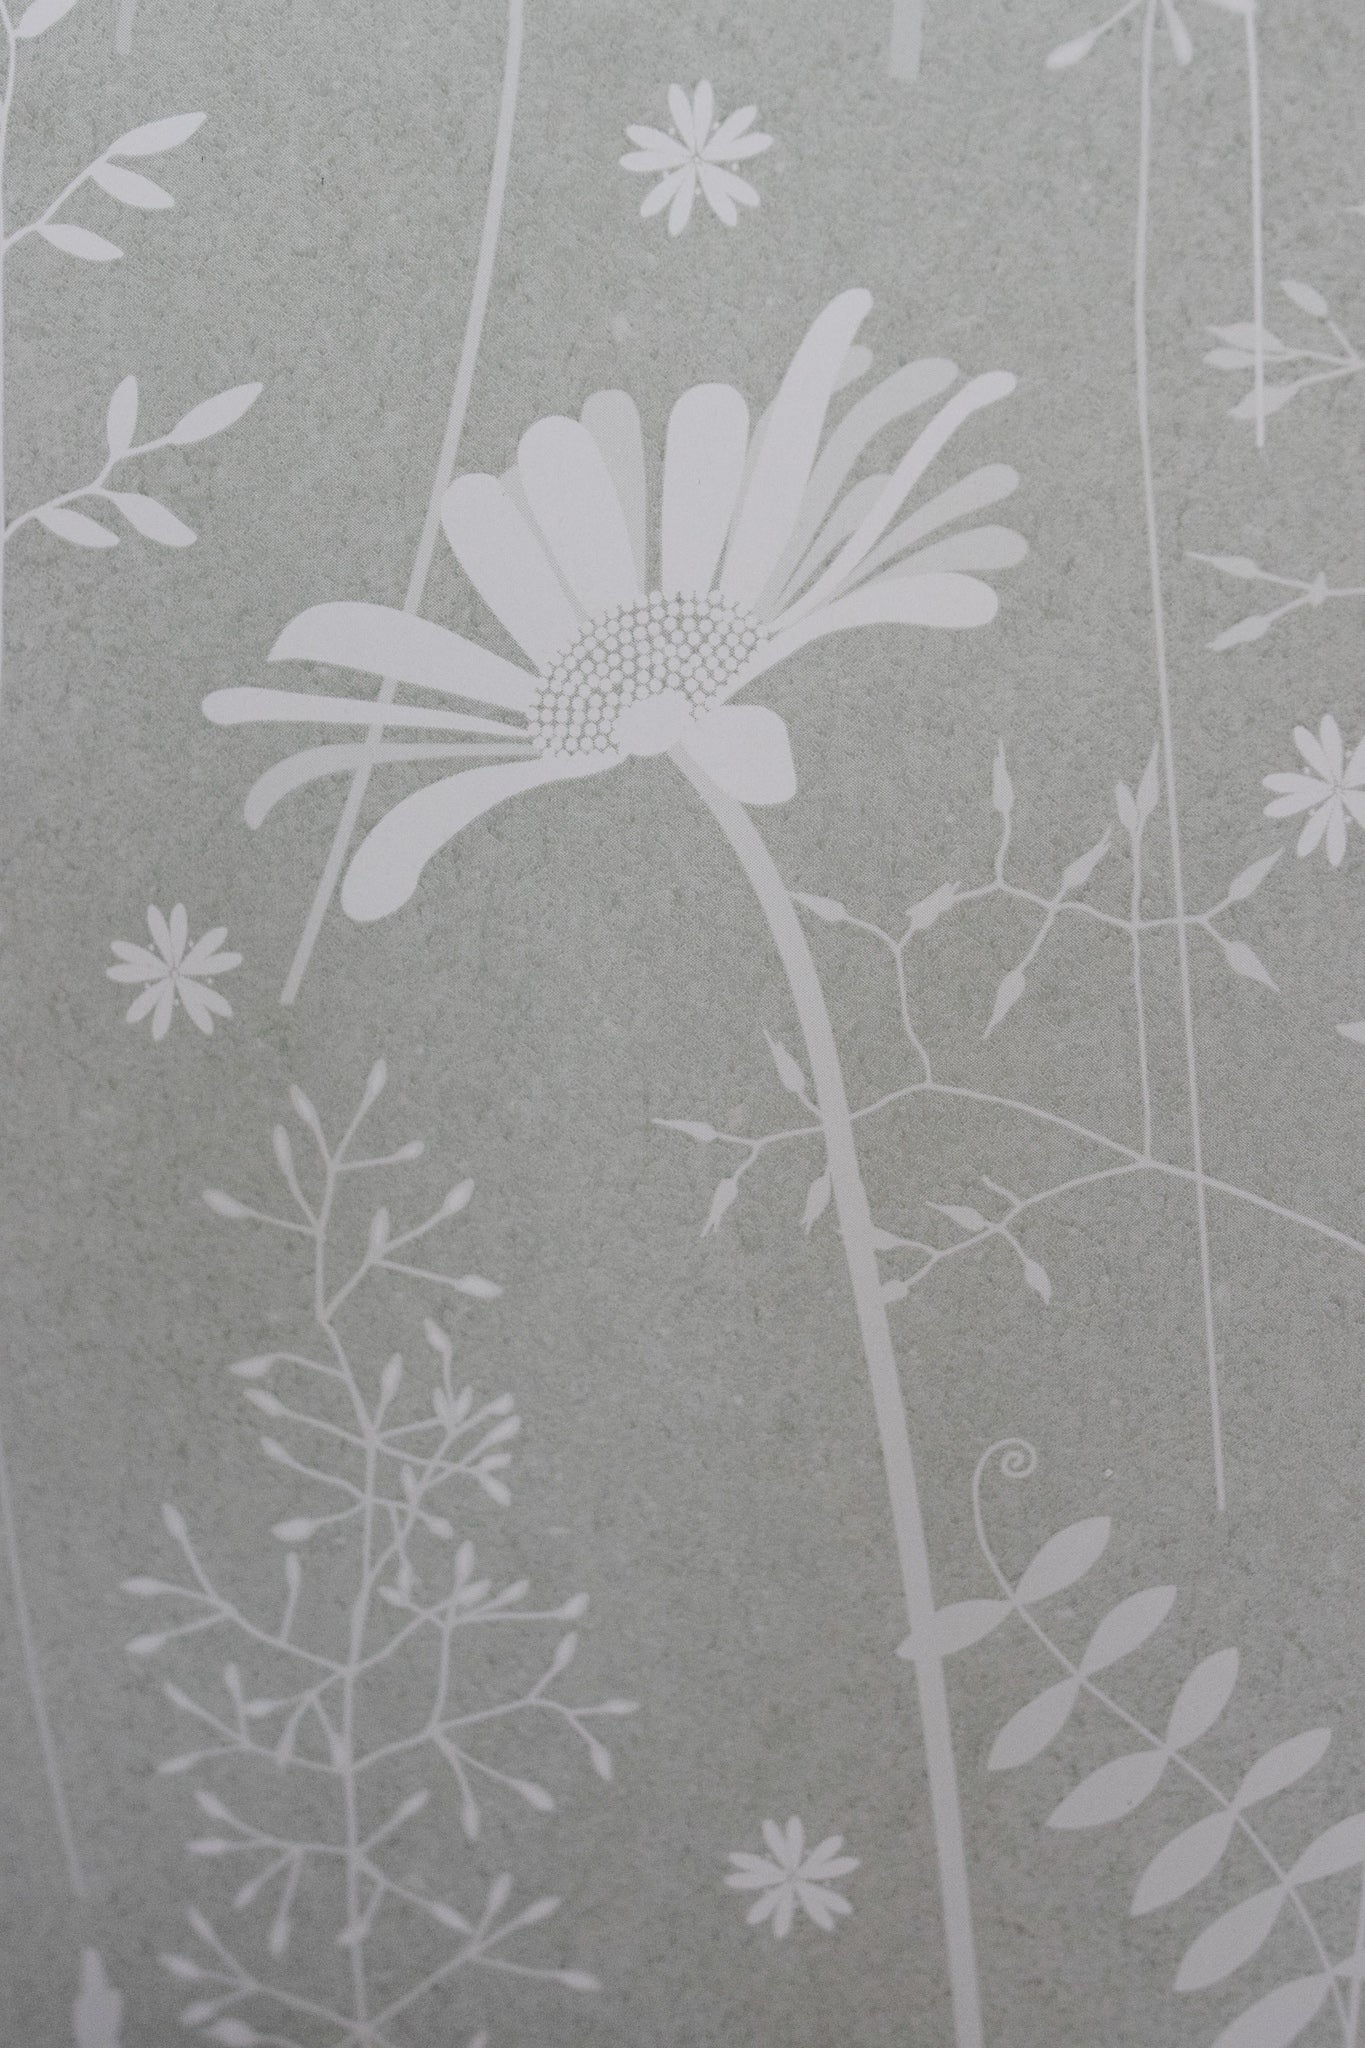 Daisy Meadow Wallpaper in Sage